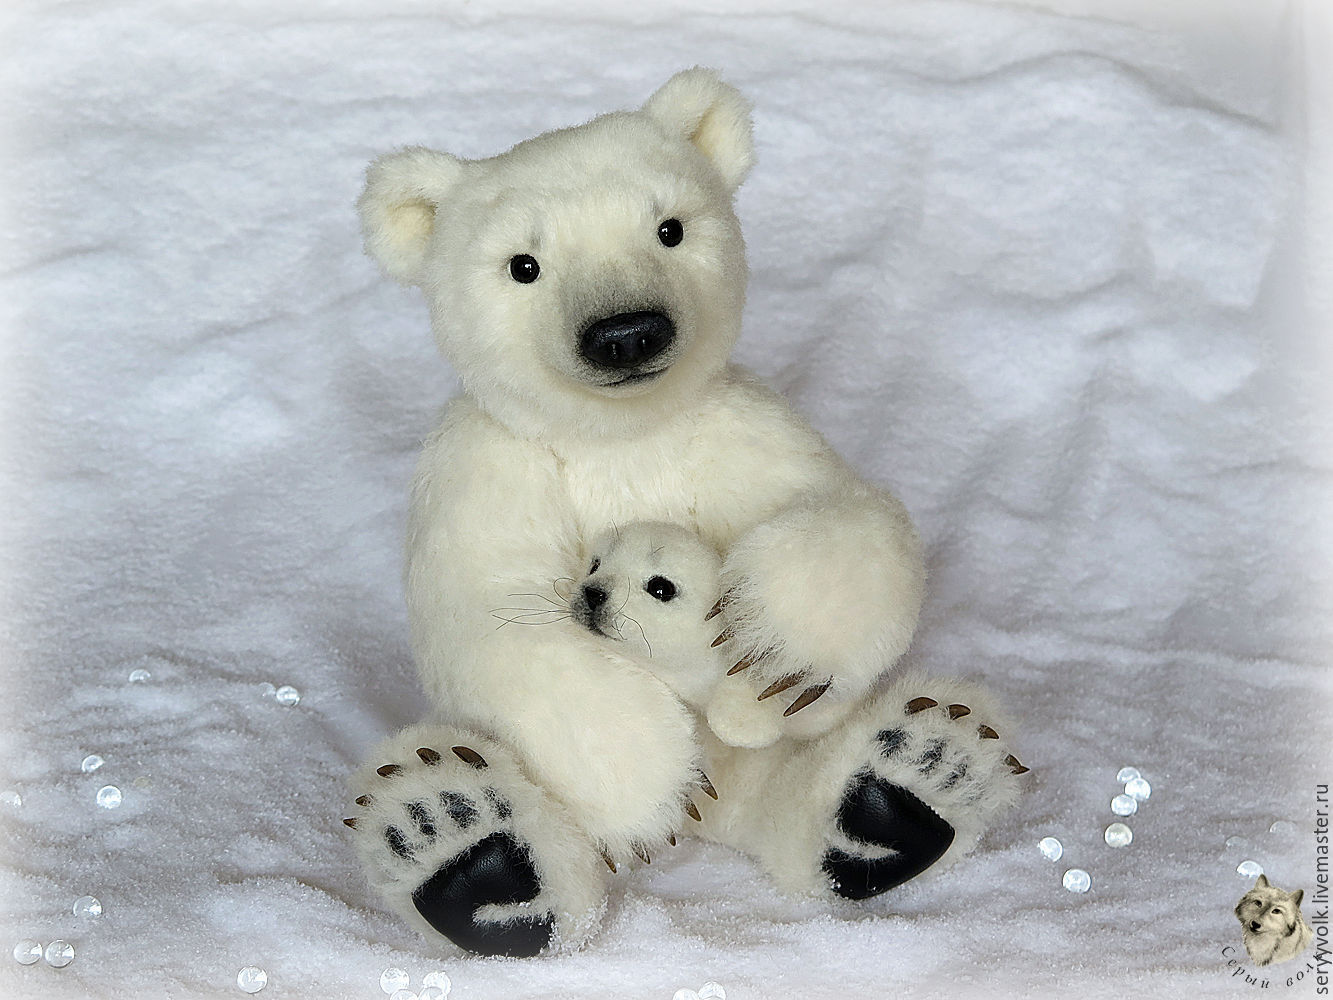 Медведь и компания встречают зиму: снежные скульптуры на песке